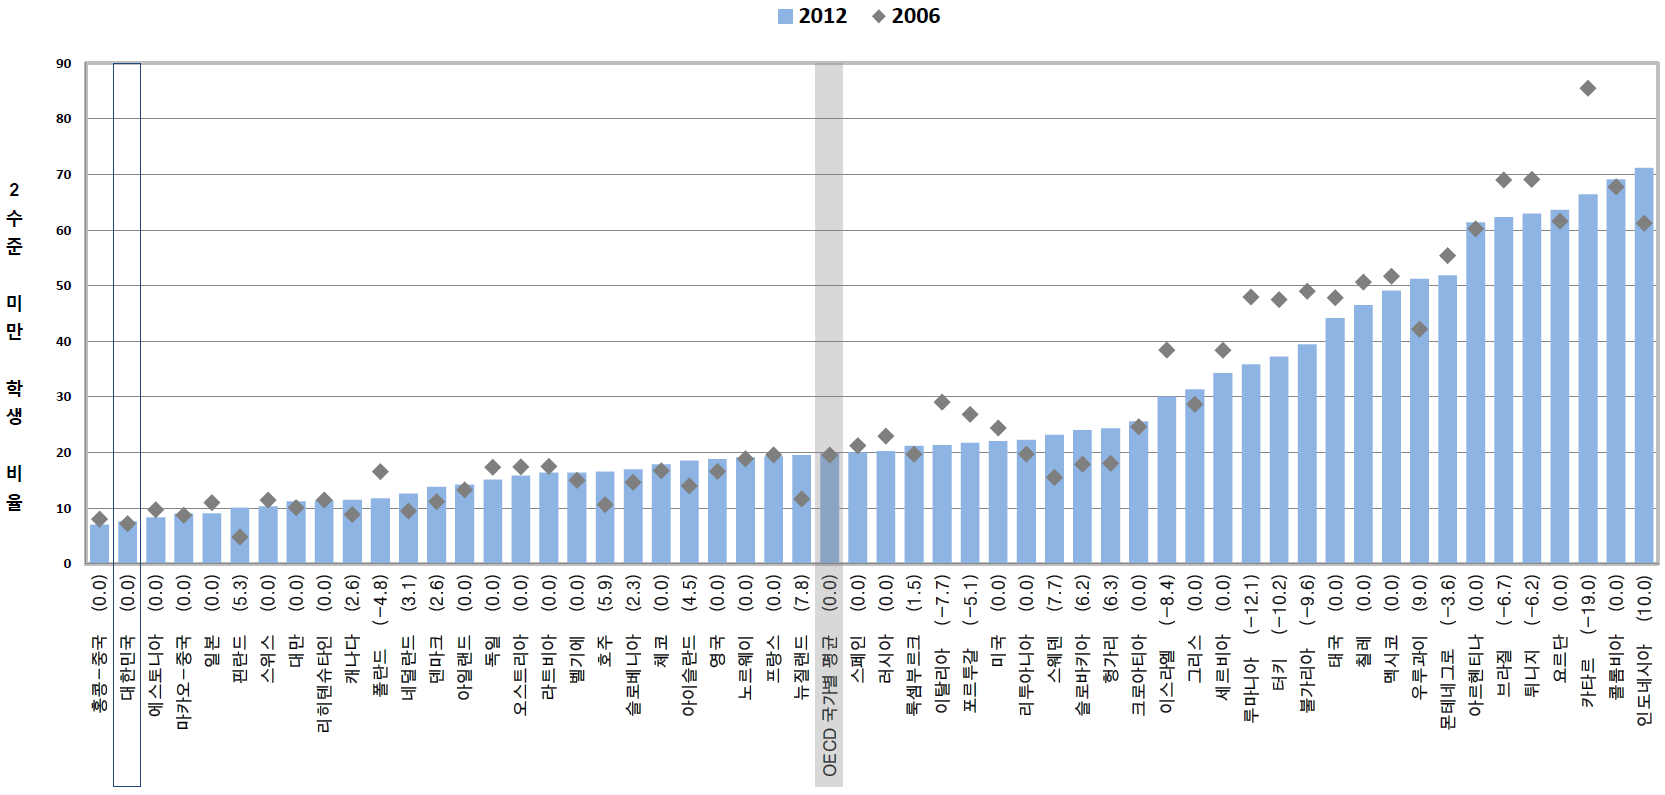 PISA 2006과 PISA 2012에서 과학 2수준 미만 학생 비율